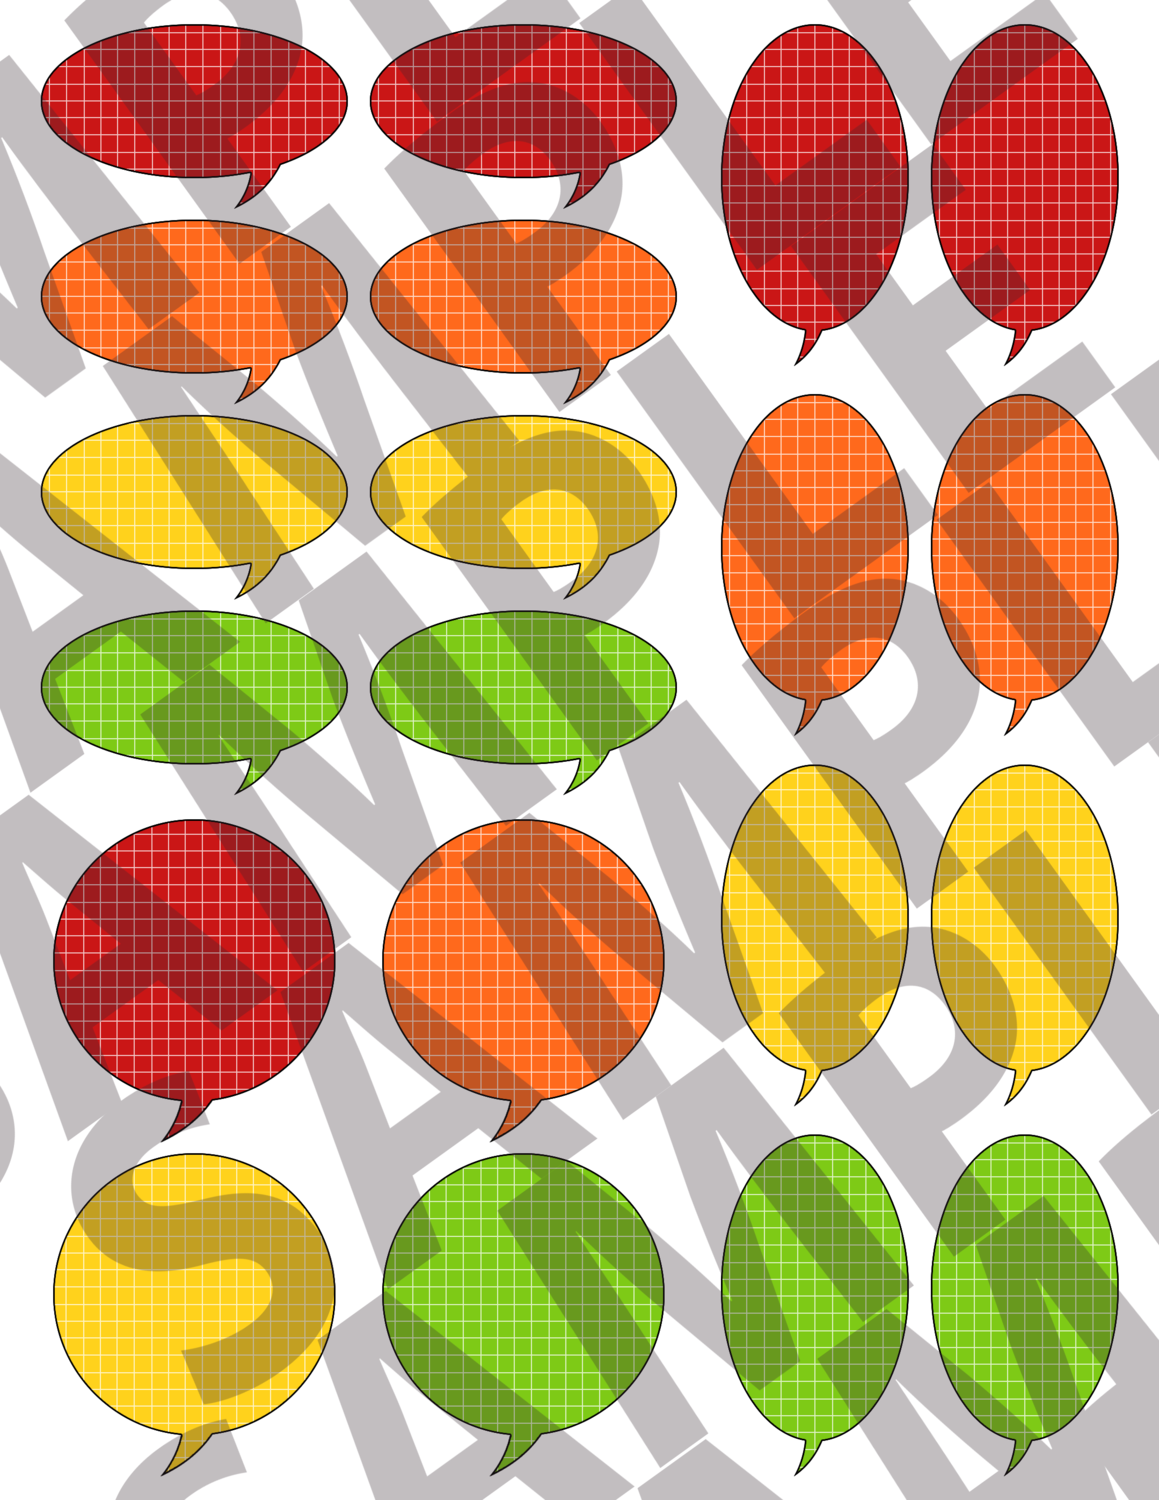 Apples & Oranges - Round Grid Speech Bubbles